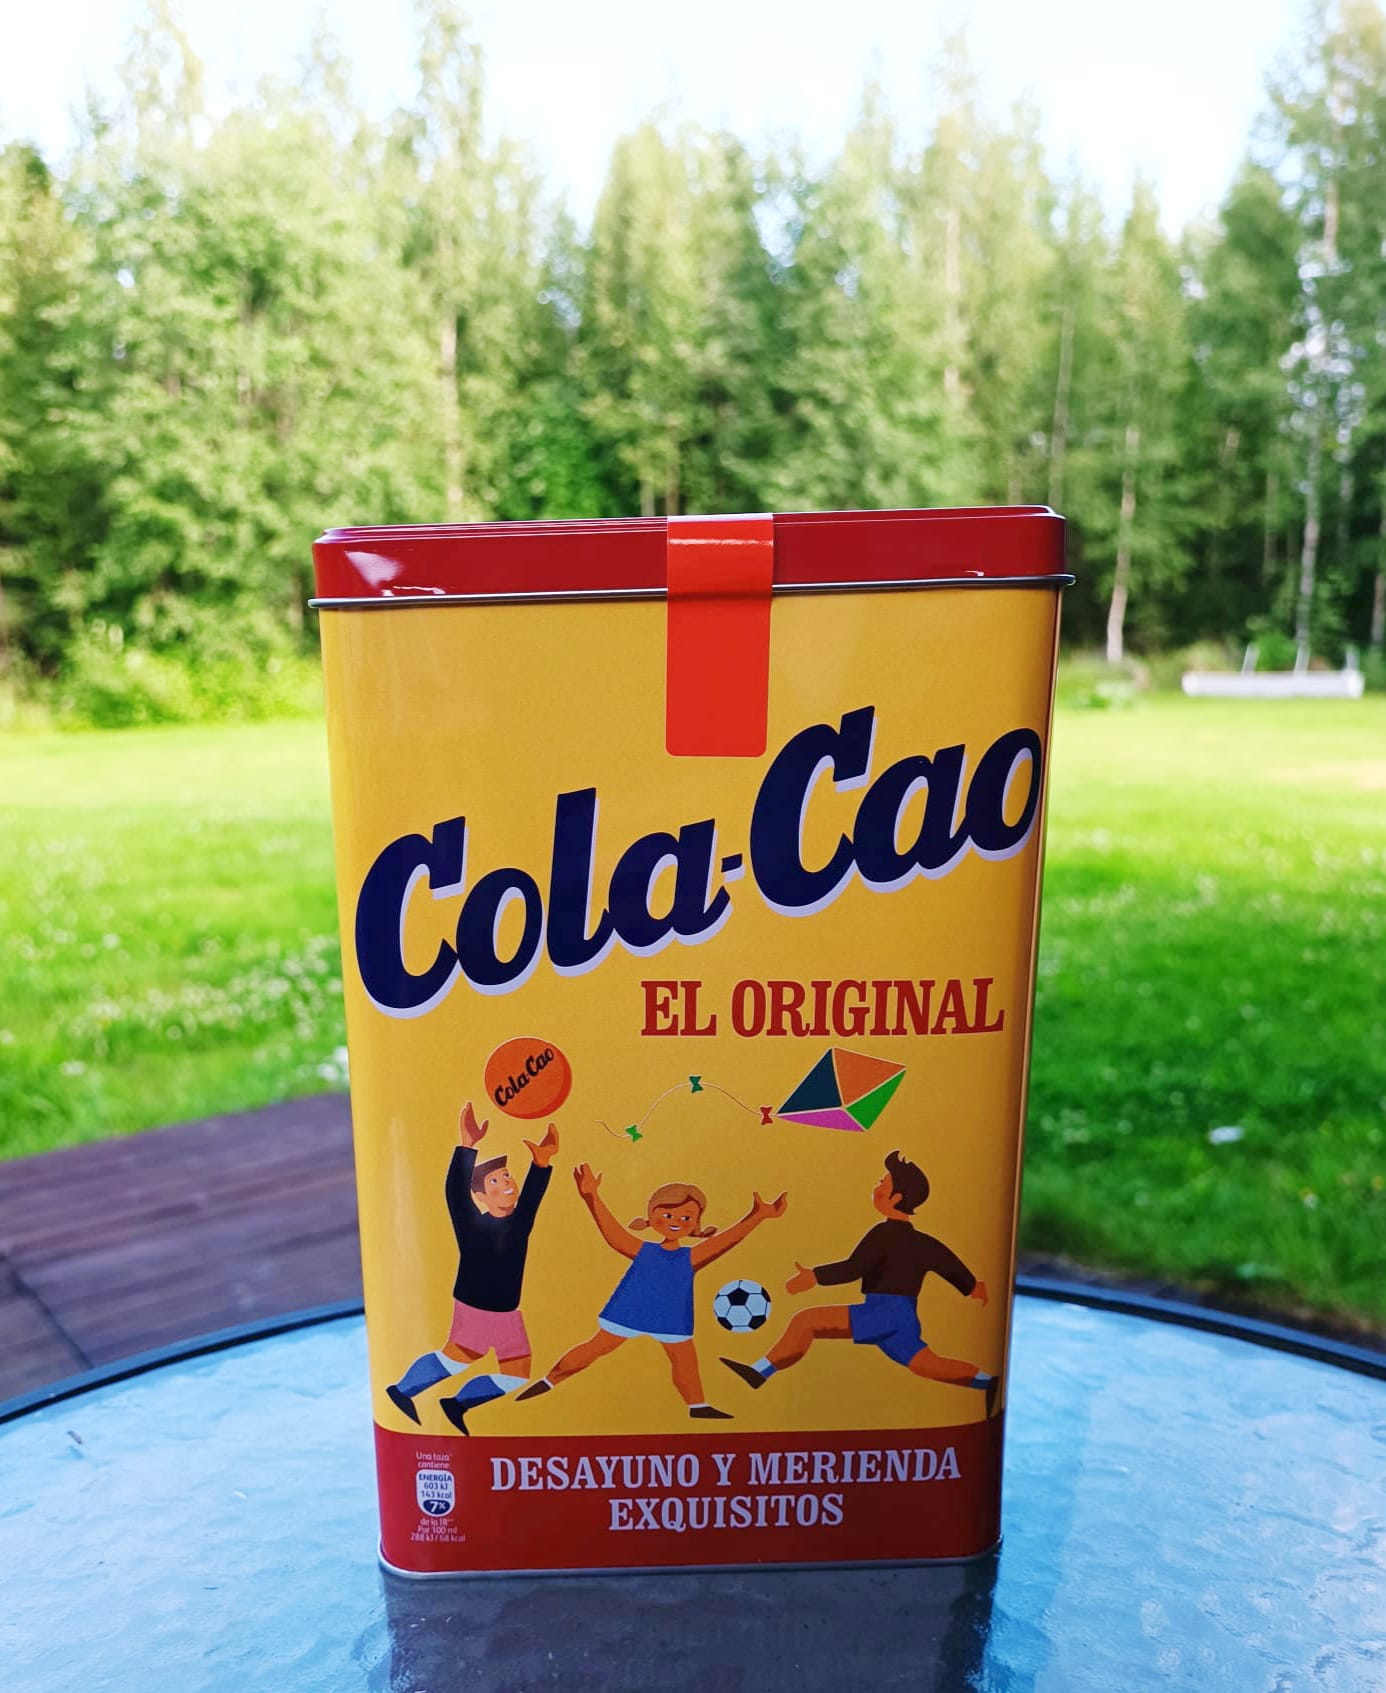 Cola Cao Original Lata 1.400 g